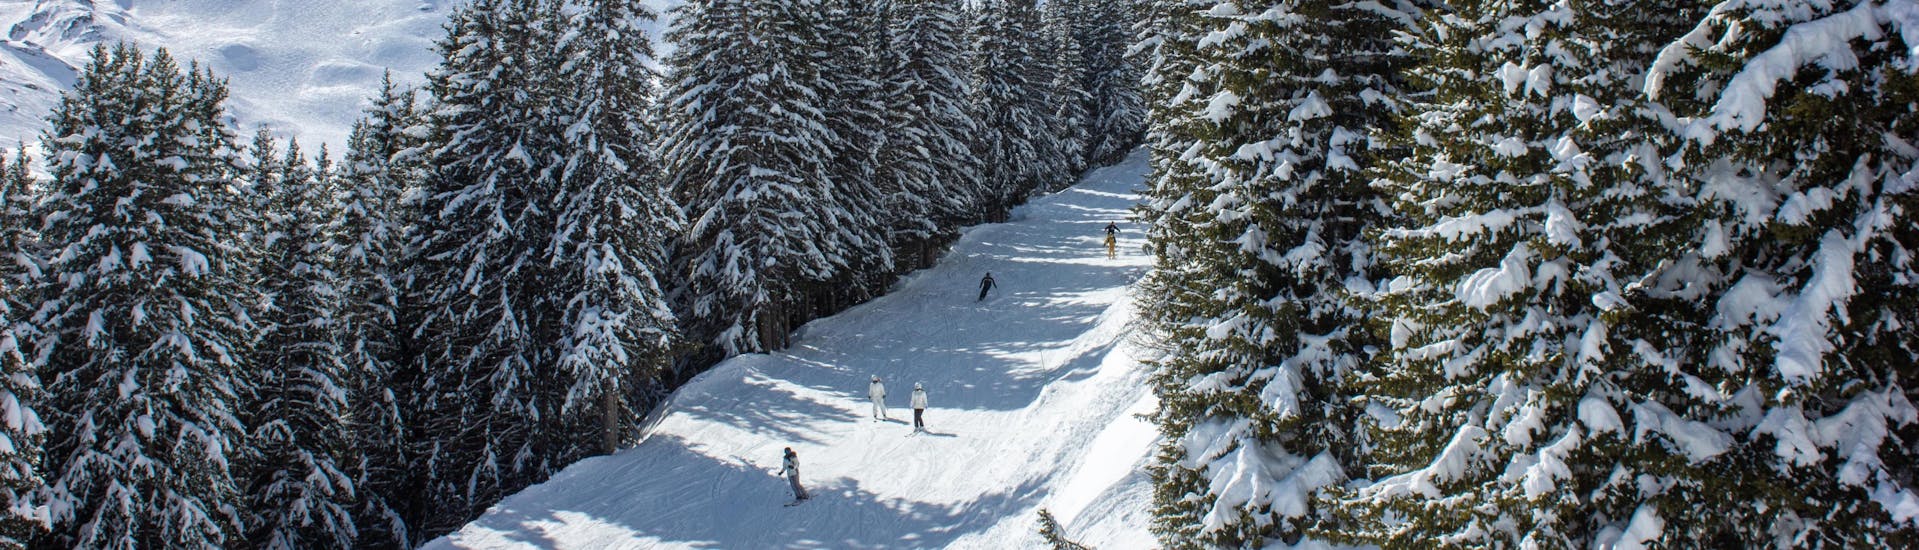 Un groupe de skieurs descend la montagne enneigée de La Tania à Courchevel pendant la saison d'hiver.